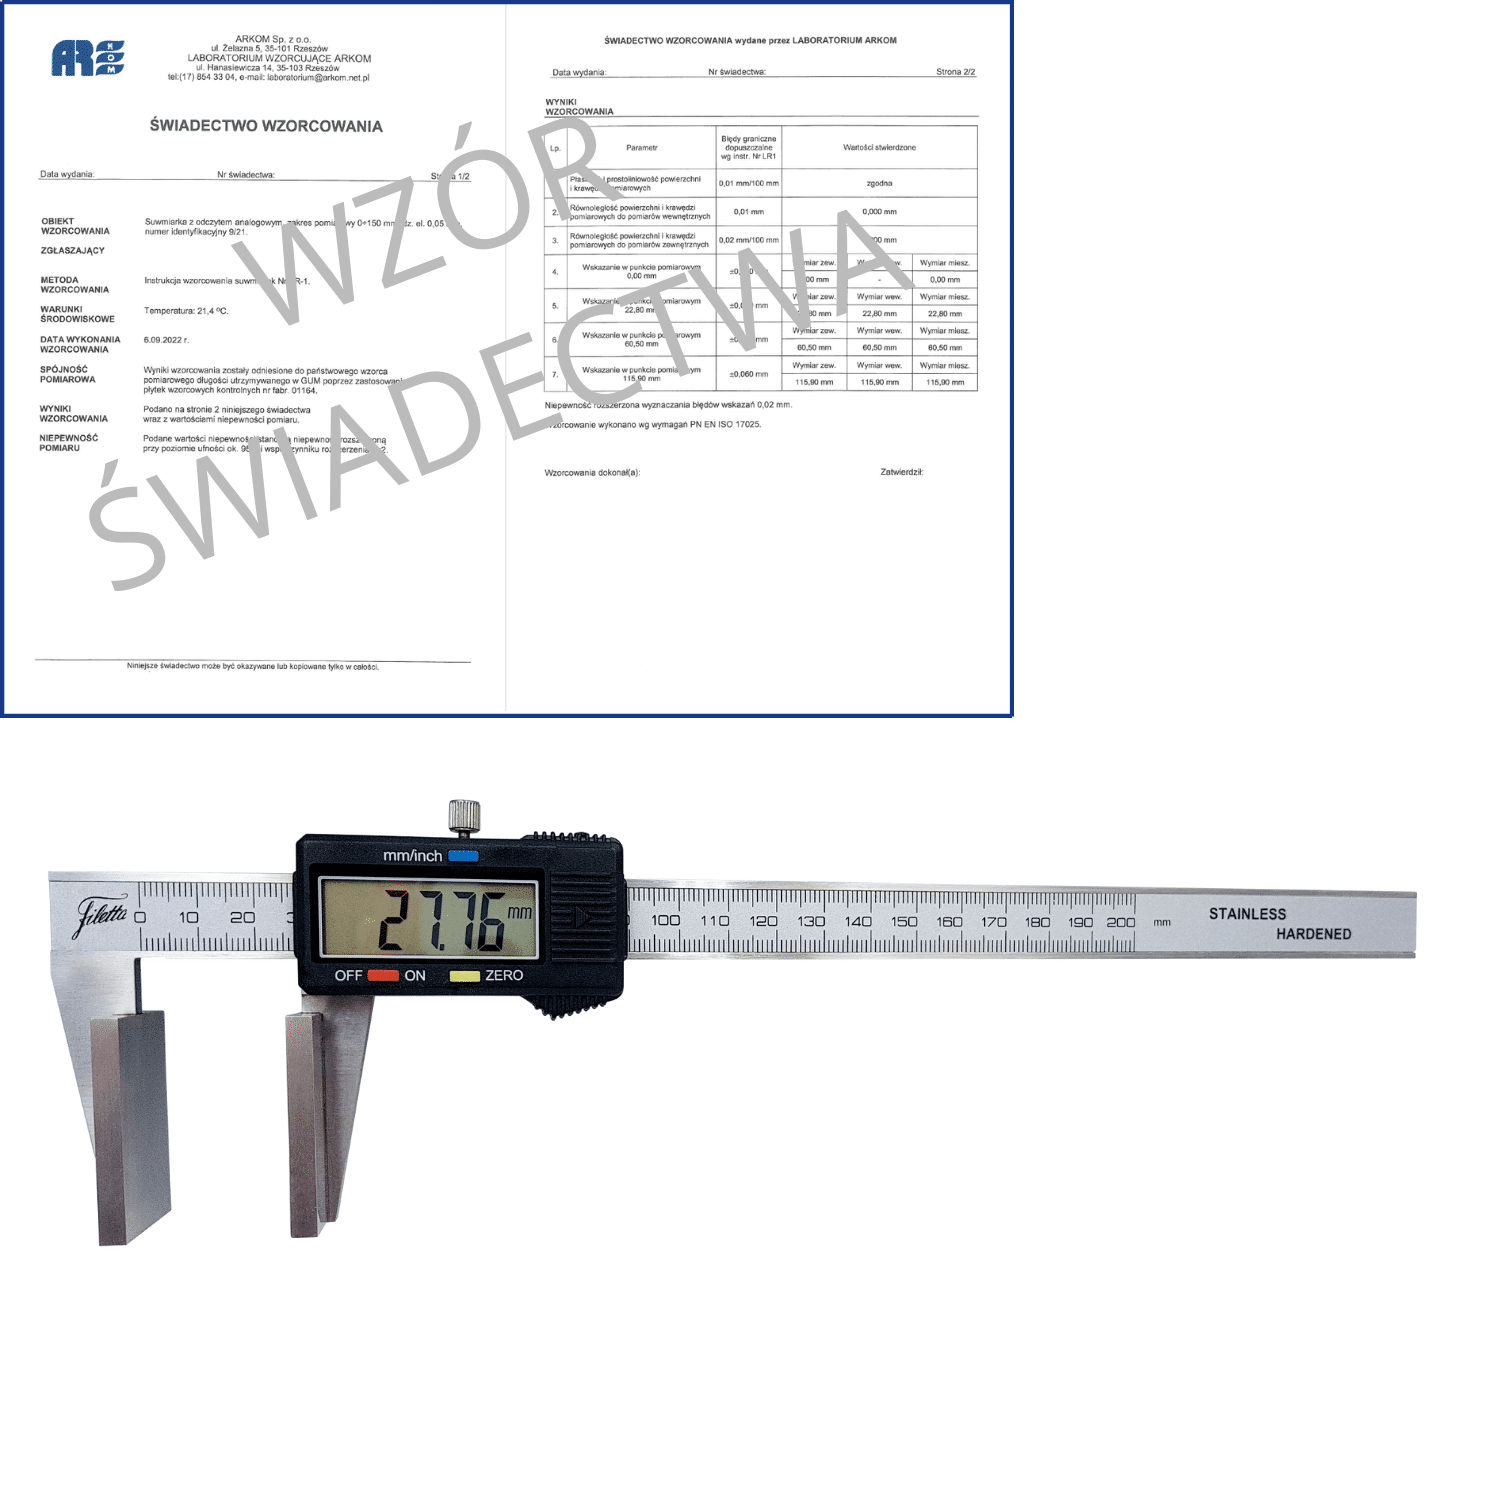 SCHUT suwmiarka elektroniczna 150/0.01 mm do pomiarów grubości lin + świadectwo wzorcowania 910.166 WZORC (Zdjęcie 1)